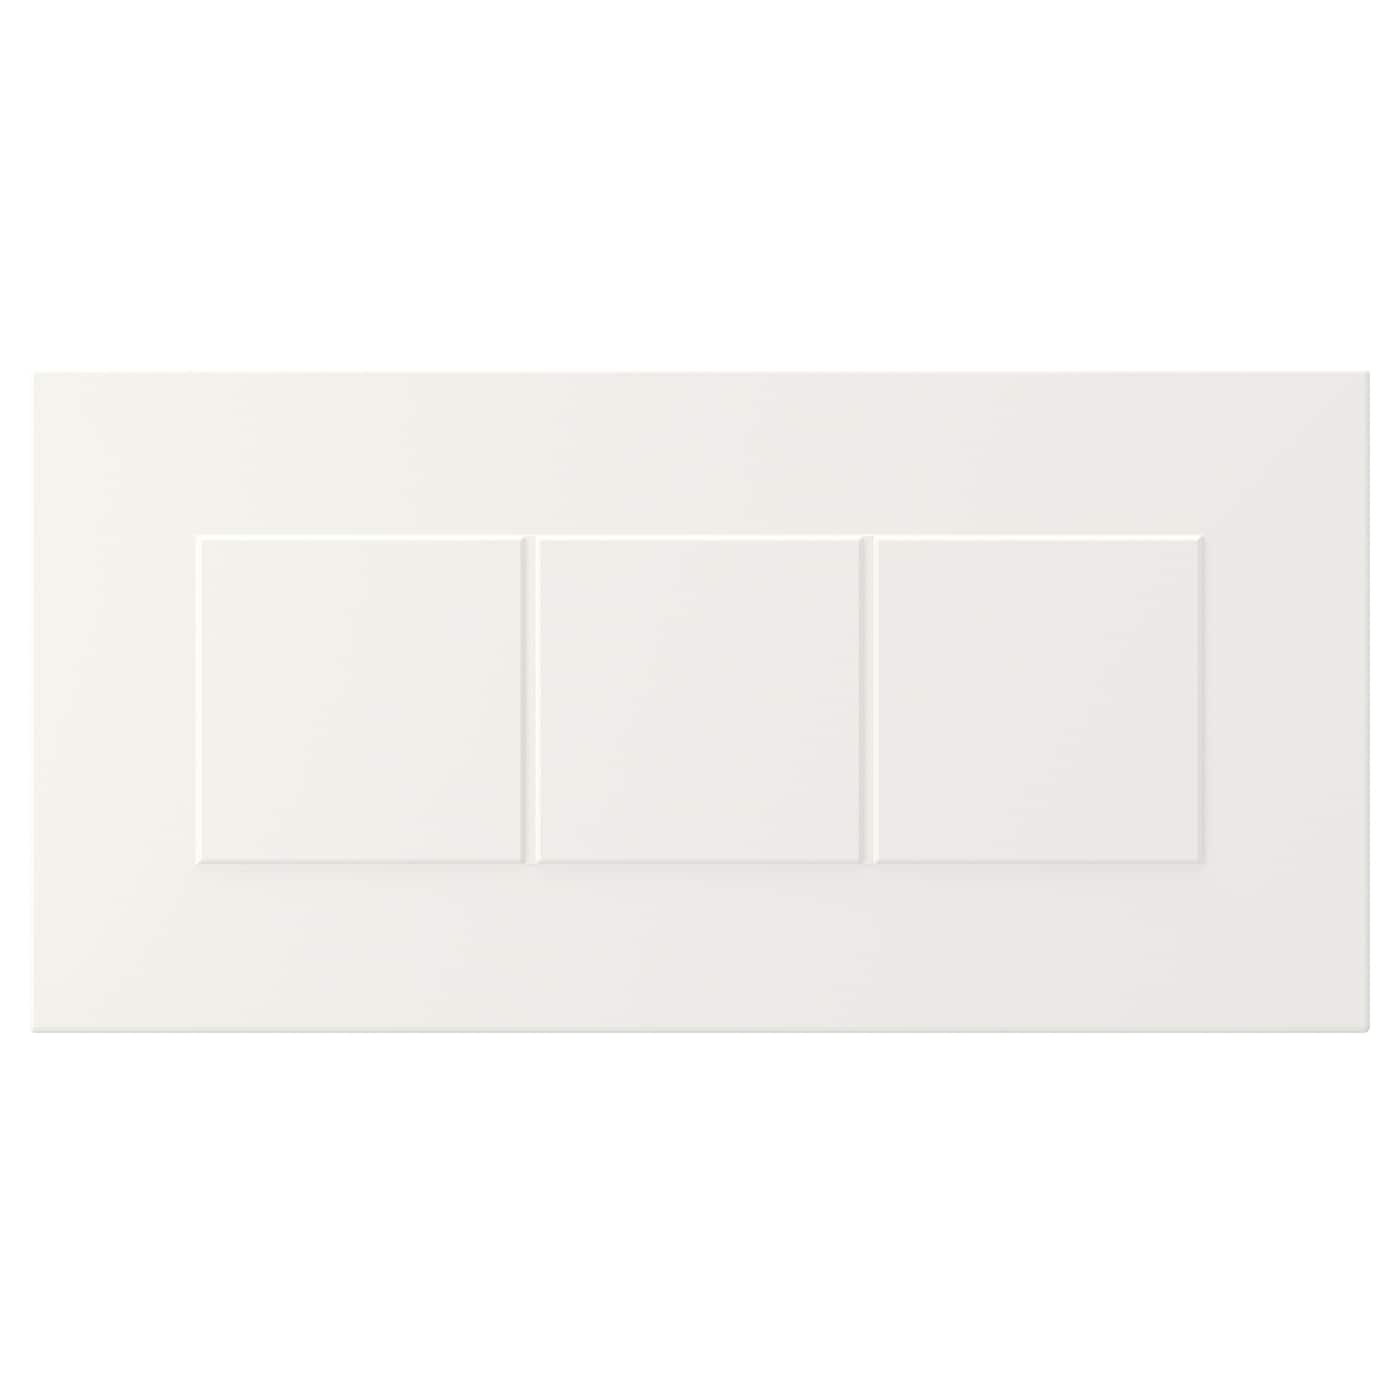 Фасад ящика - IKEA STENSUND, 20х40 см, белый, СТЕНСУНД ИКЕА